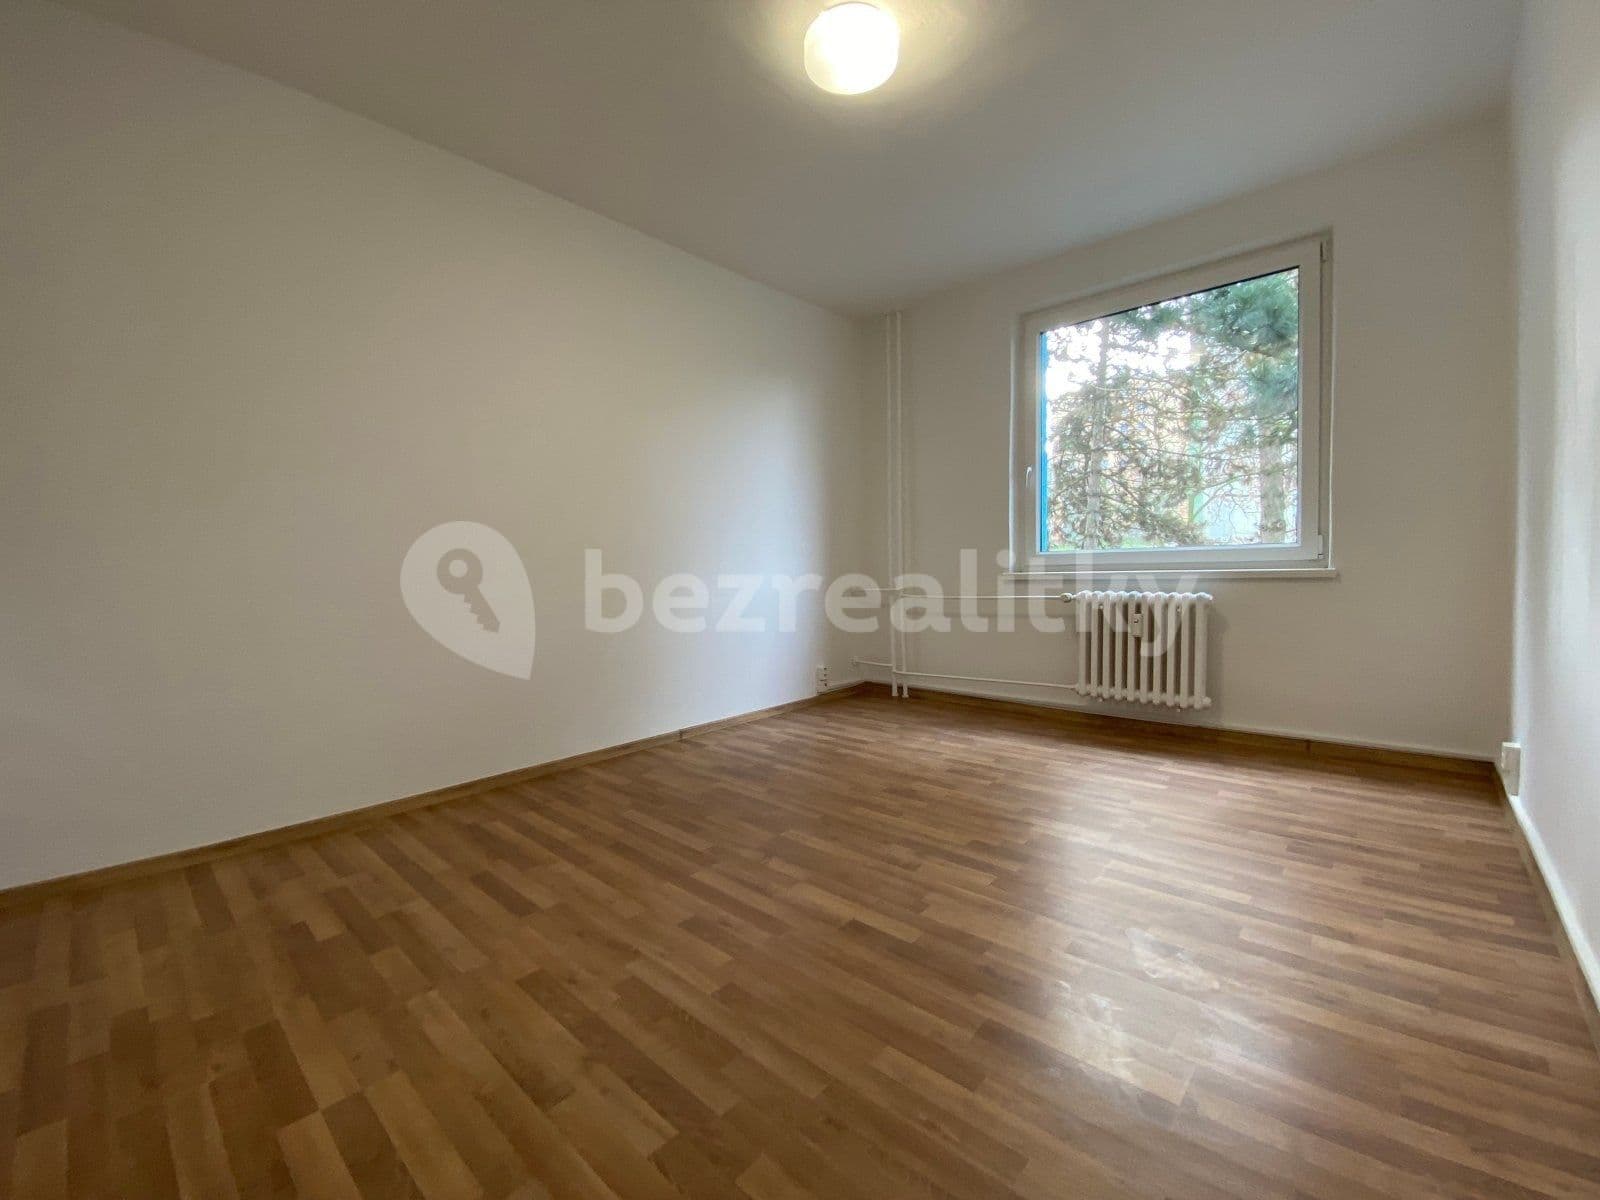 3 bedroom flat to rent, 69 m², Okružní, Orlová, Moravskoslezský Region